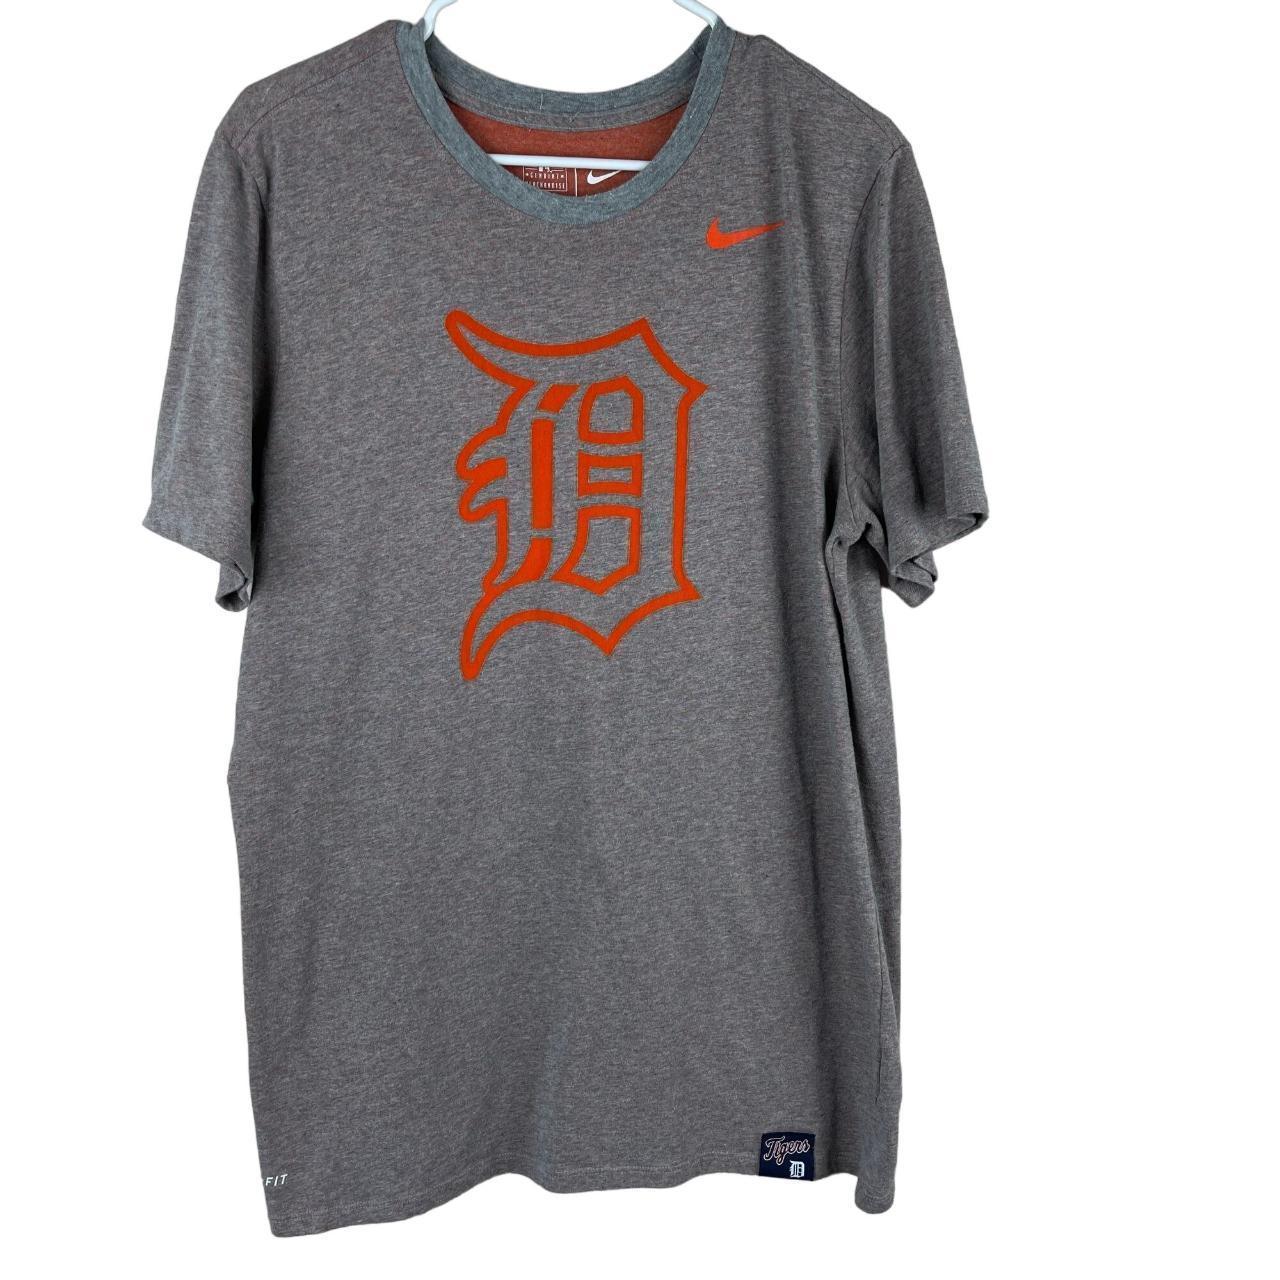 MLB Detroit Tigers Nike Dri-fit tee ⚾️ Size XL see - Depop